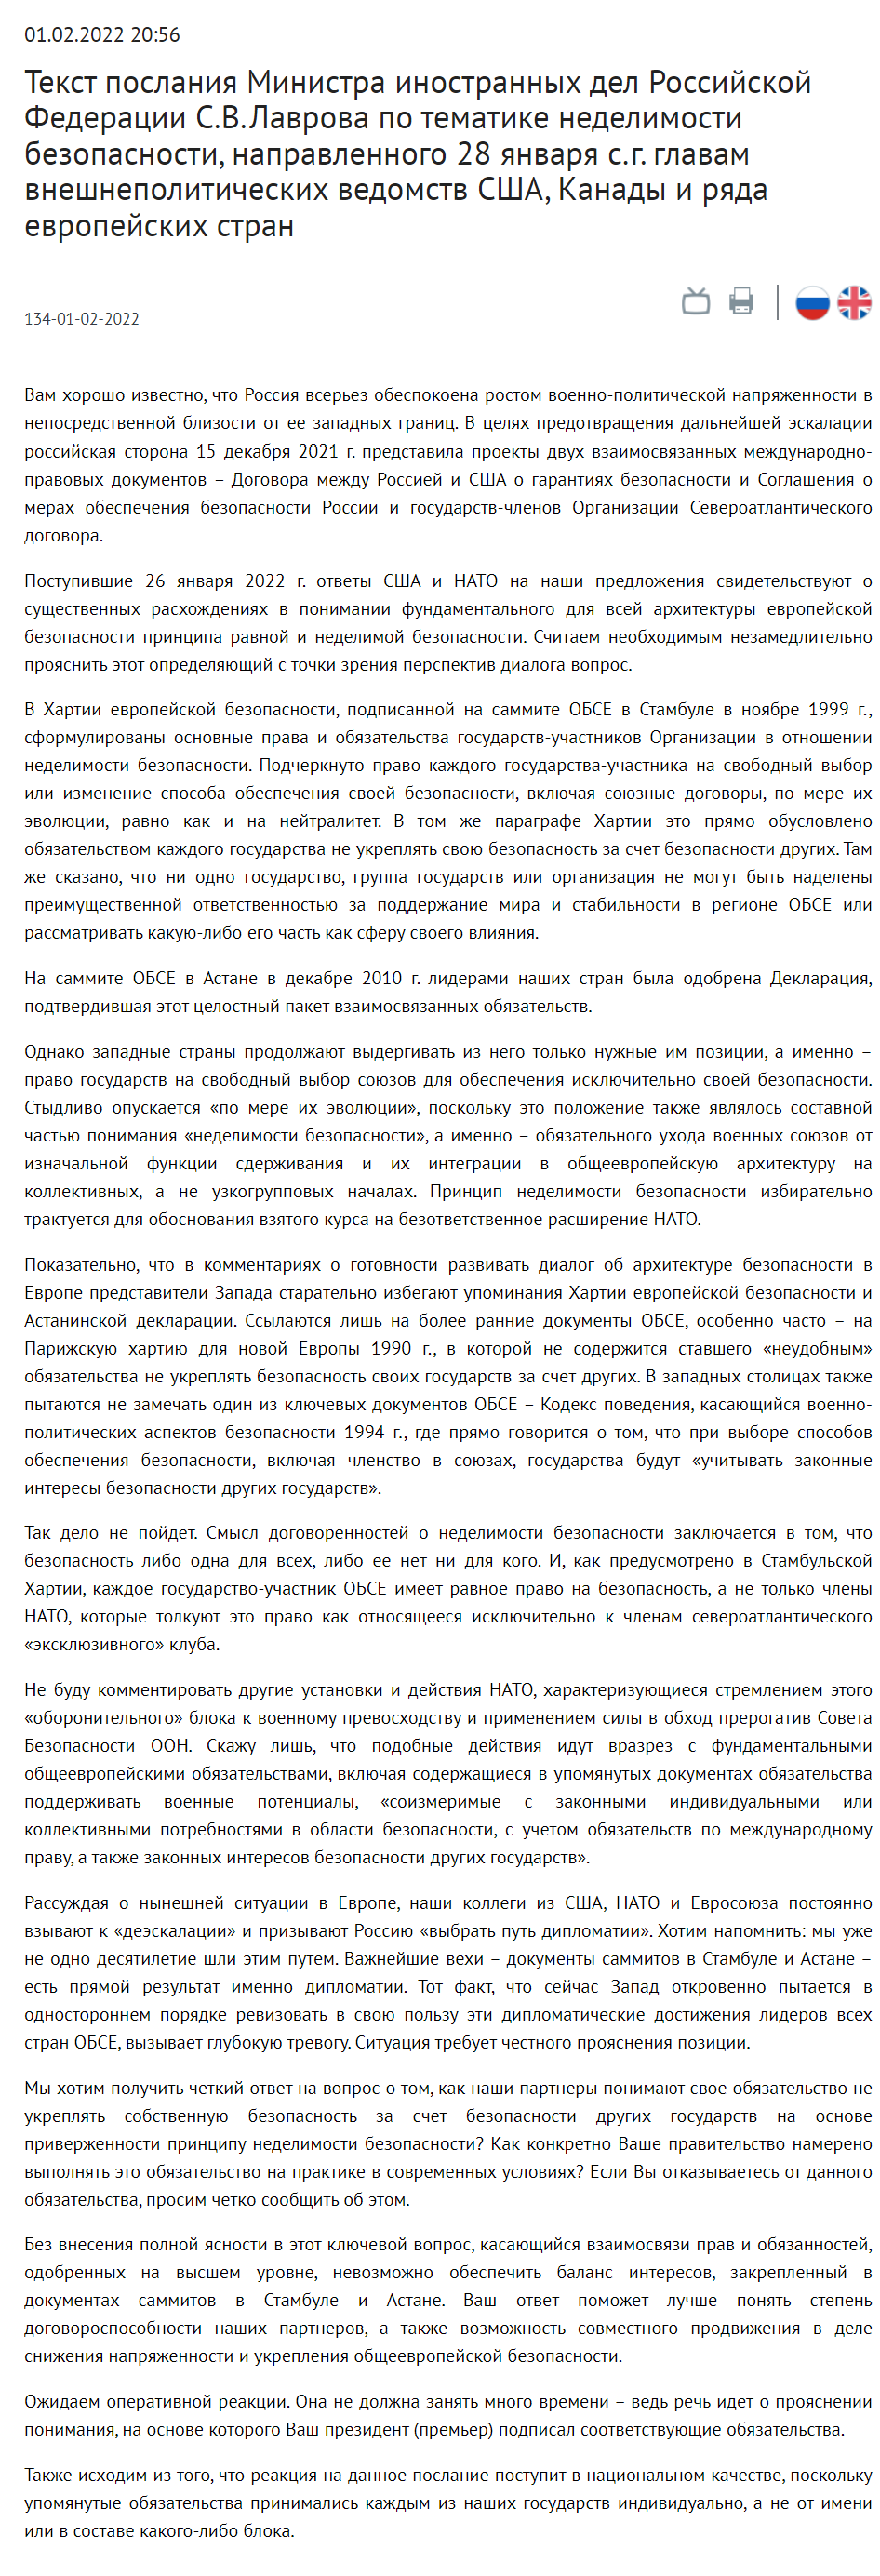 Скриншот послания Сергея Лаврова